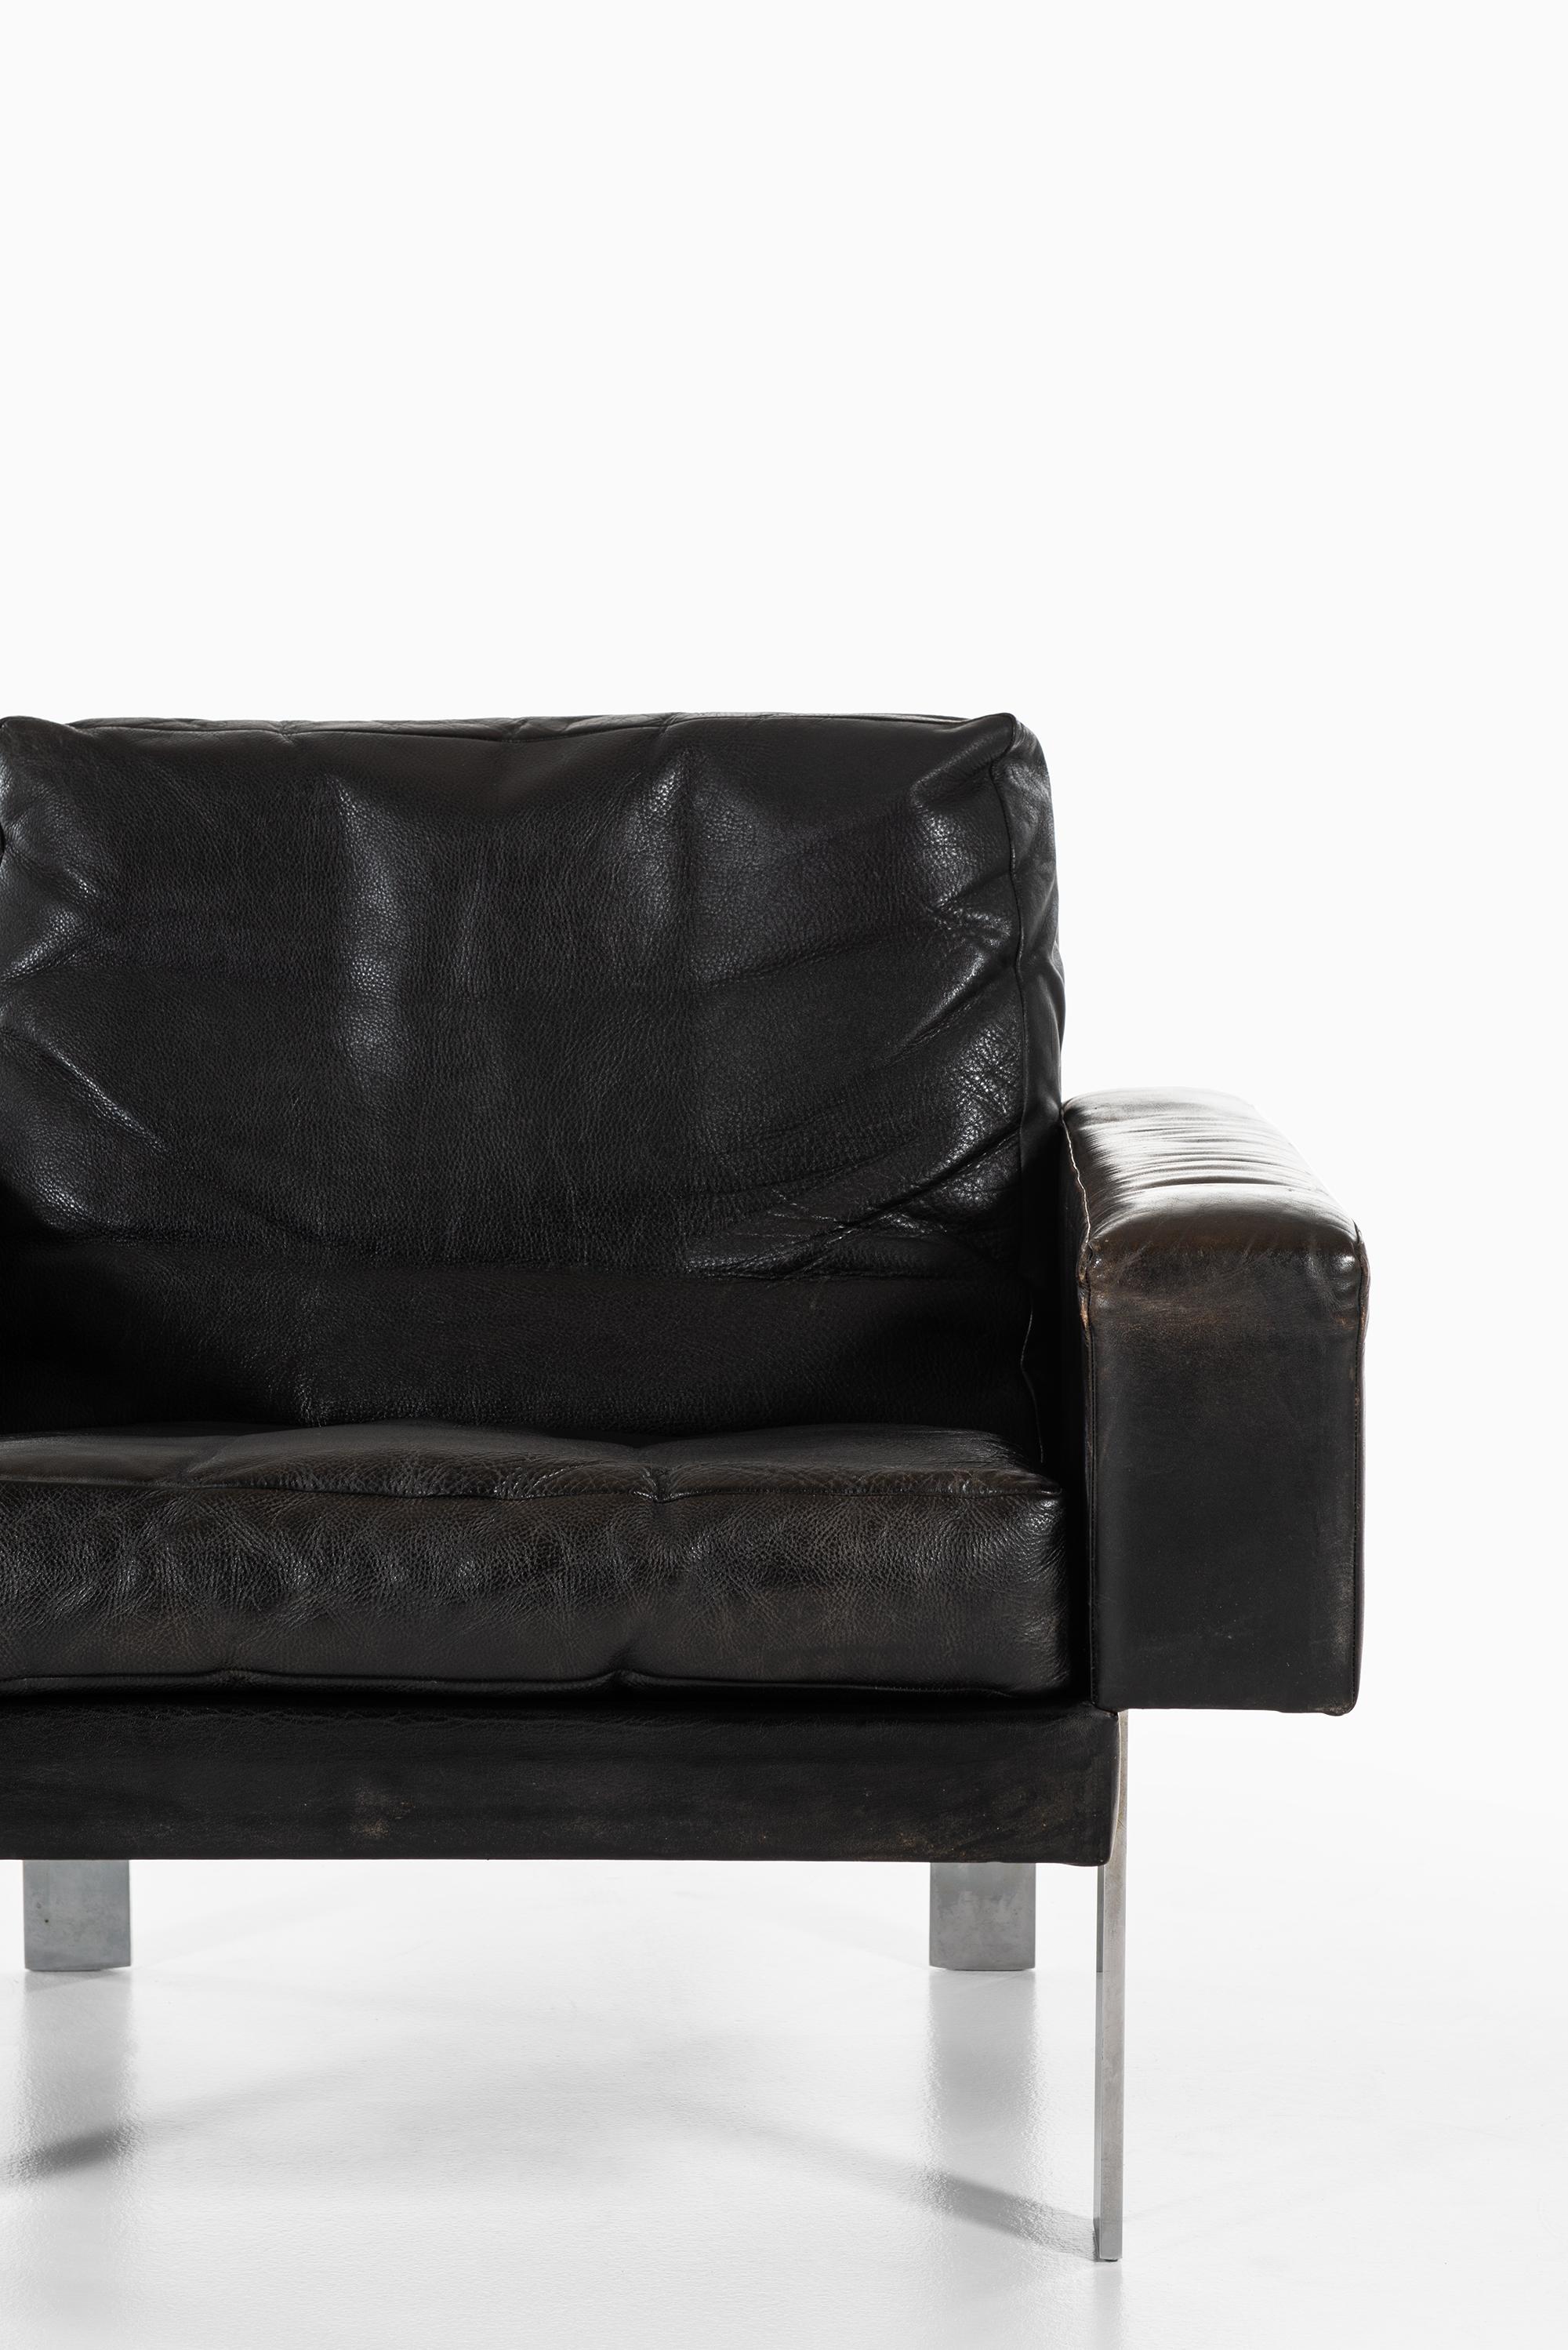 Scandinavian Modern Illum Wikkelsø Easy Chair by Michael Laursen in Denmark For Sale